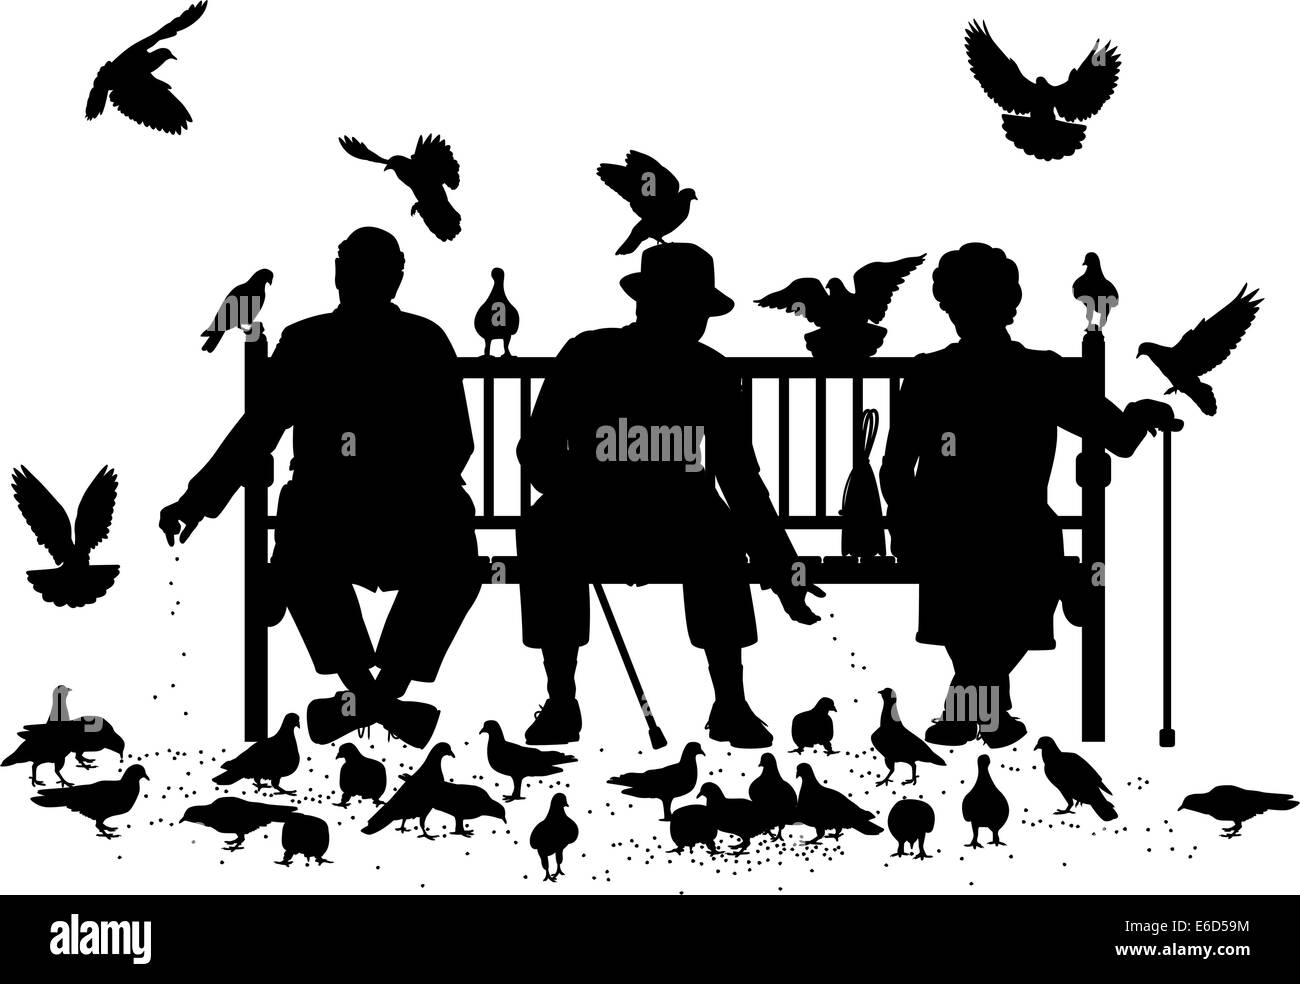 Silhouettes vecteur modifiable de trois personnes âgées sur un banc de parc nourrir les pigeons avec tous les éléments en tant qu'objets séparés Illustration de Vecteur